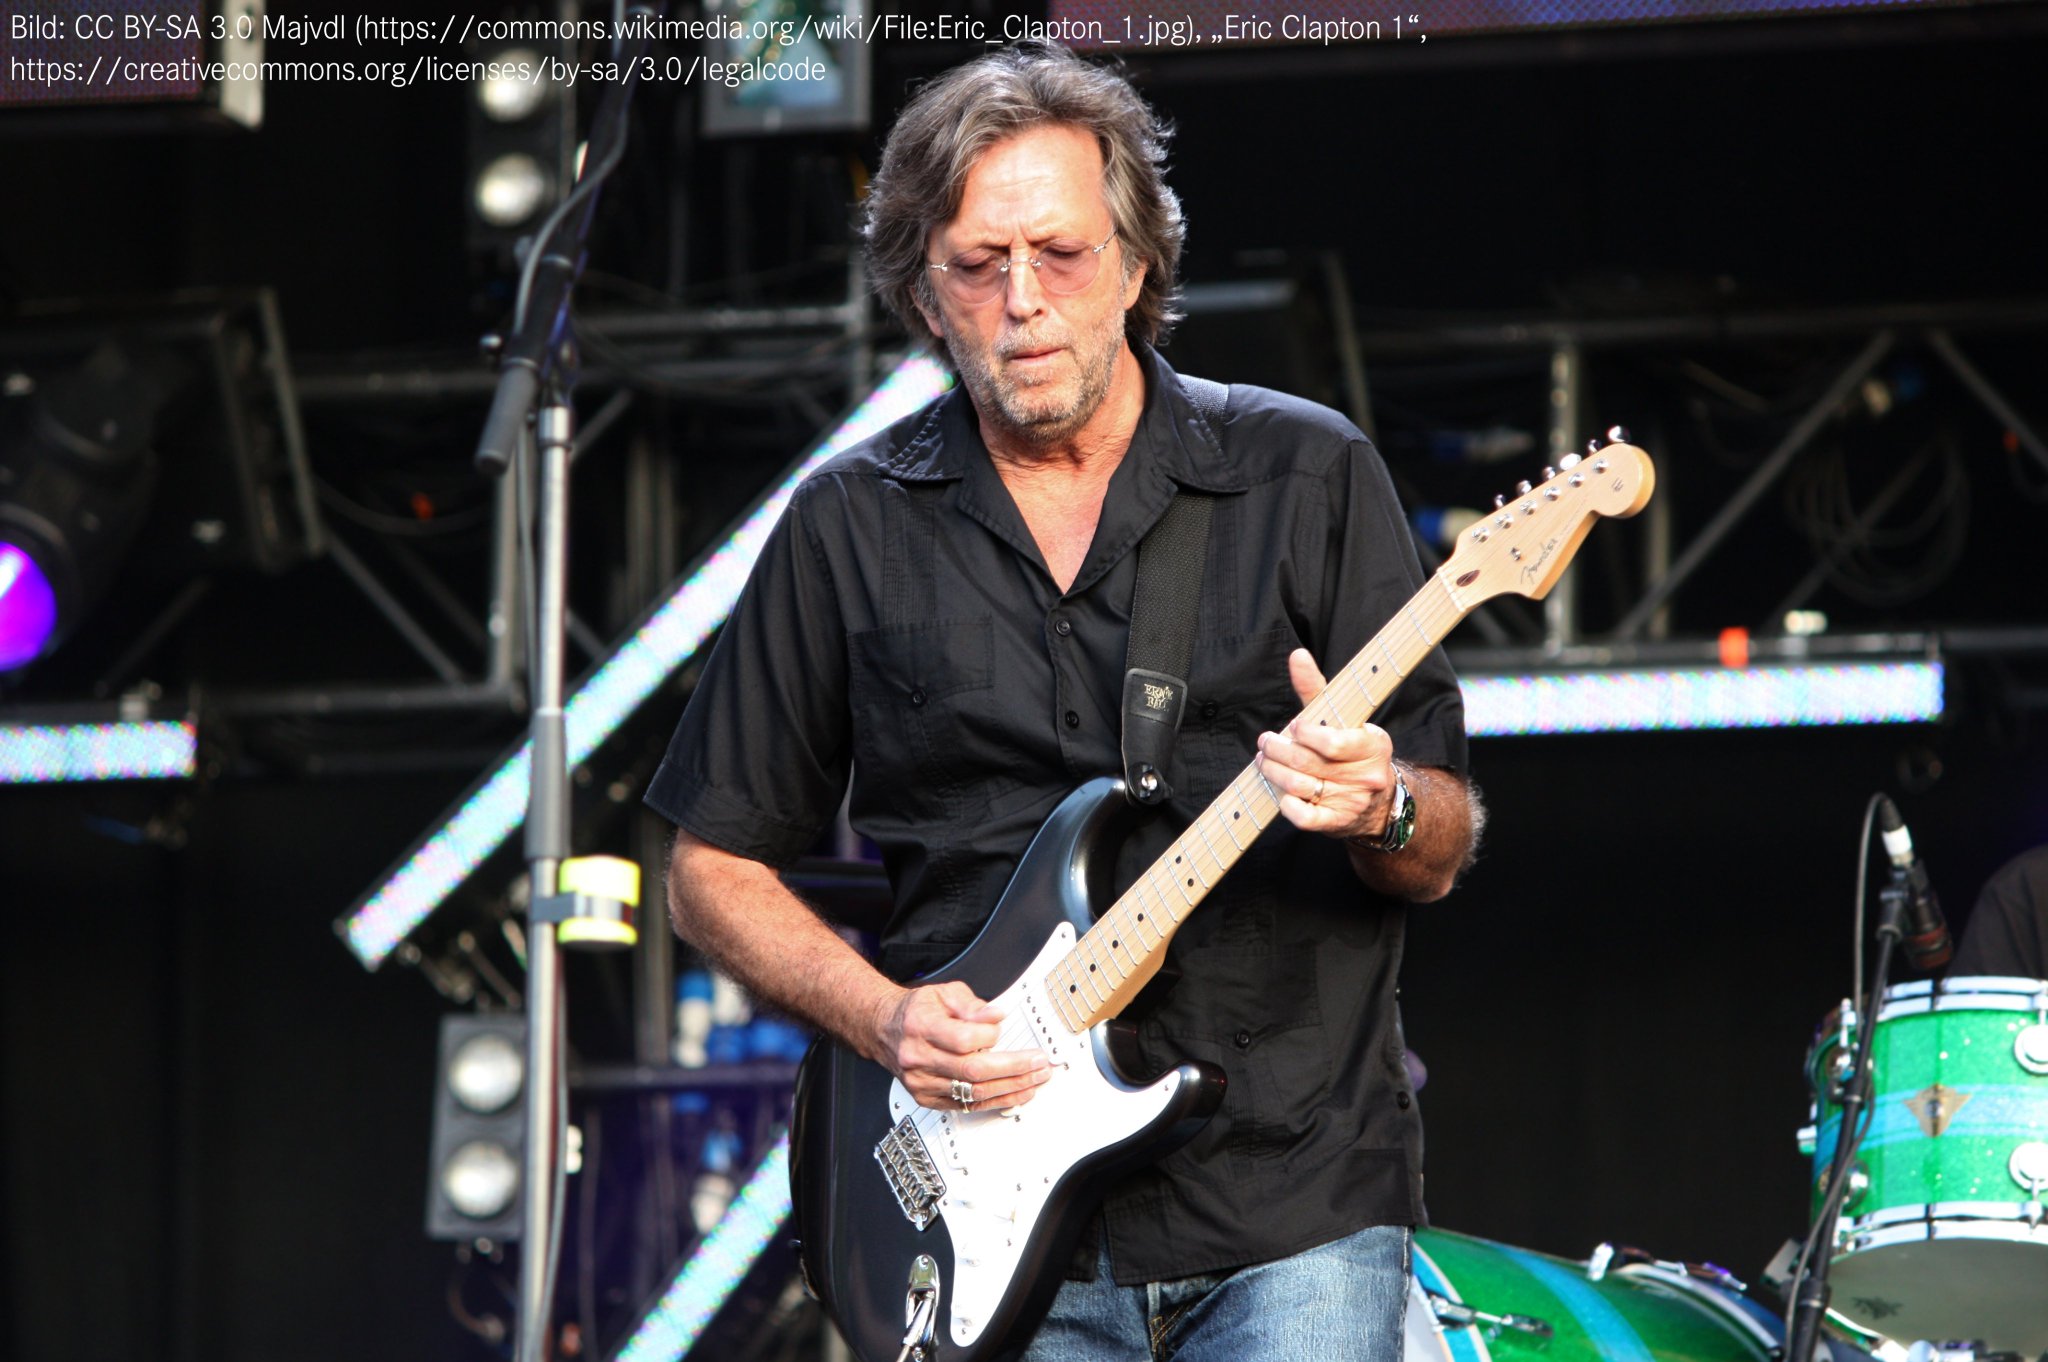 Eric Clapton wird heute 76! Happy Birthday! Er ist einer meiner Helden. Schon oft live gesehen. Keep on rockin! 